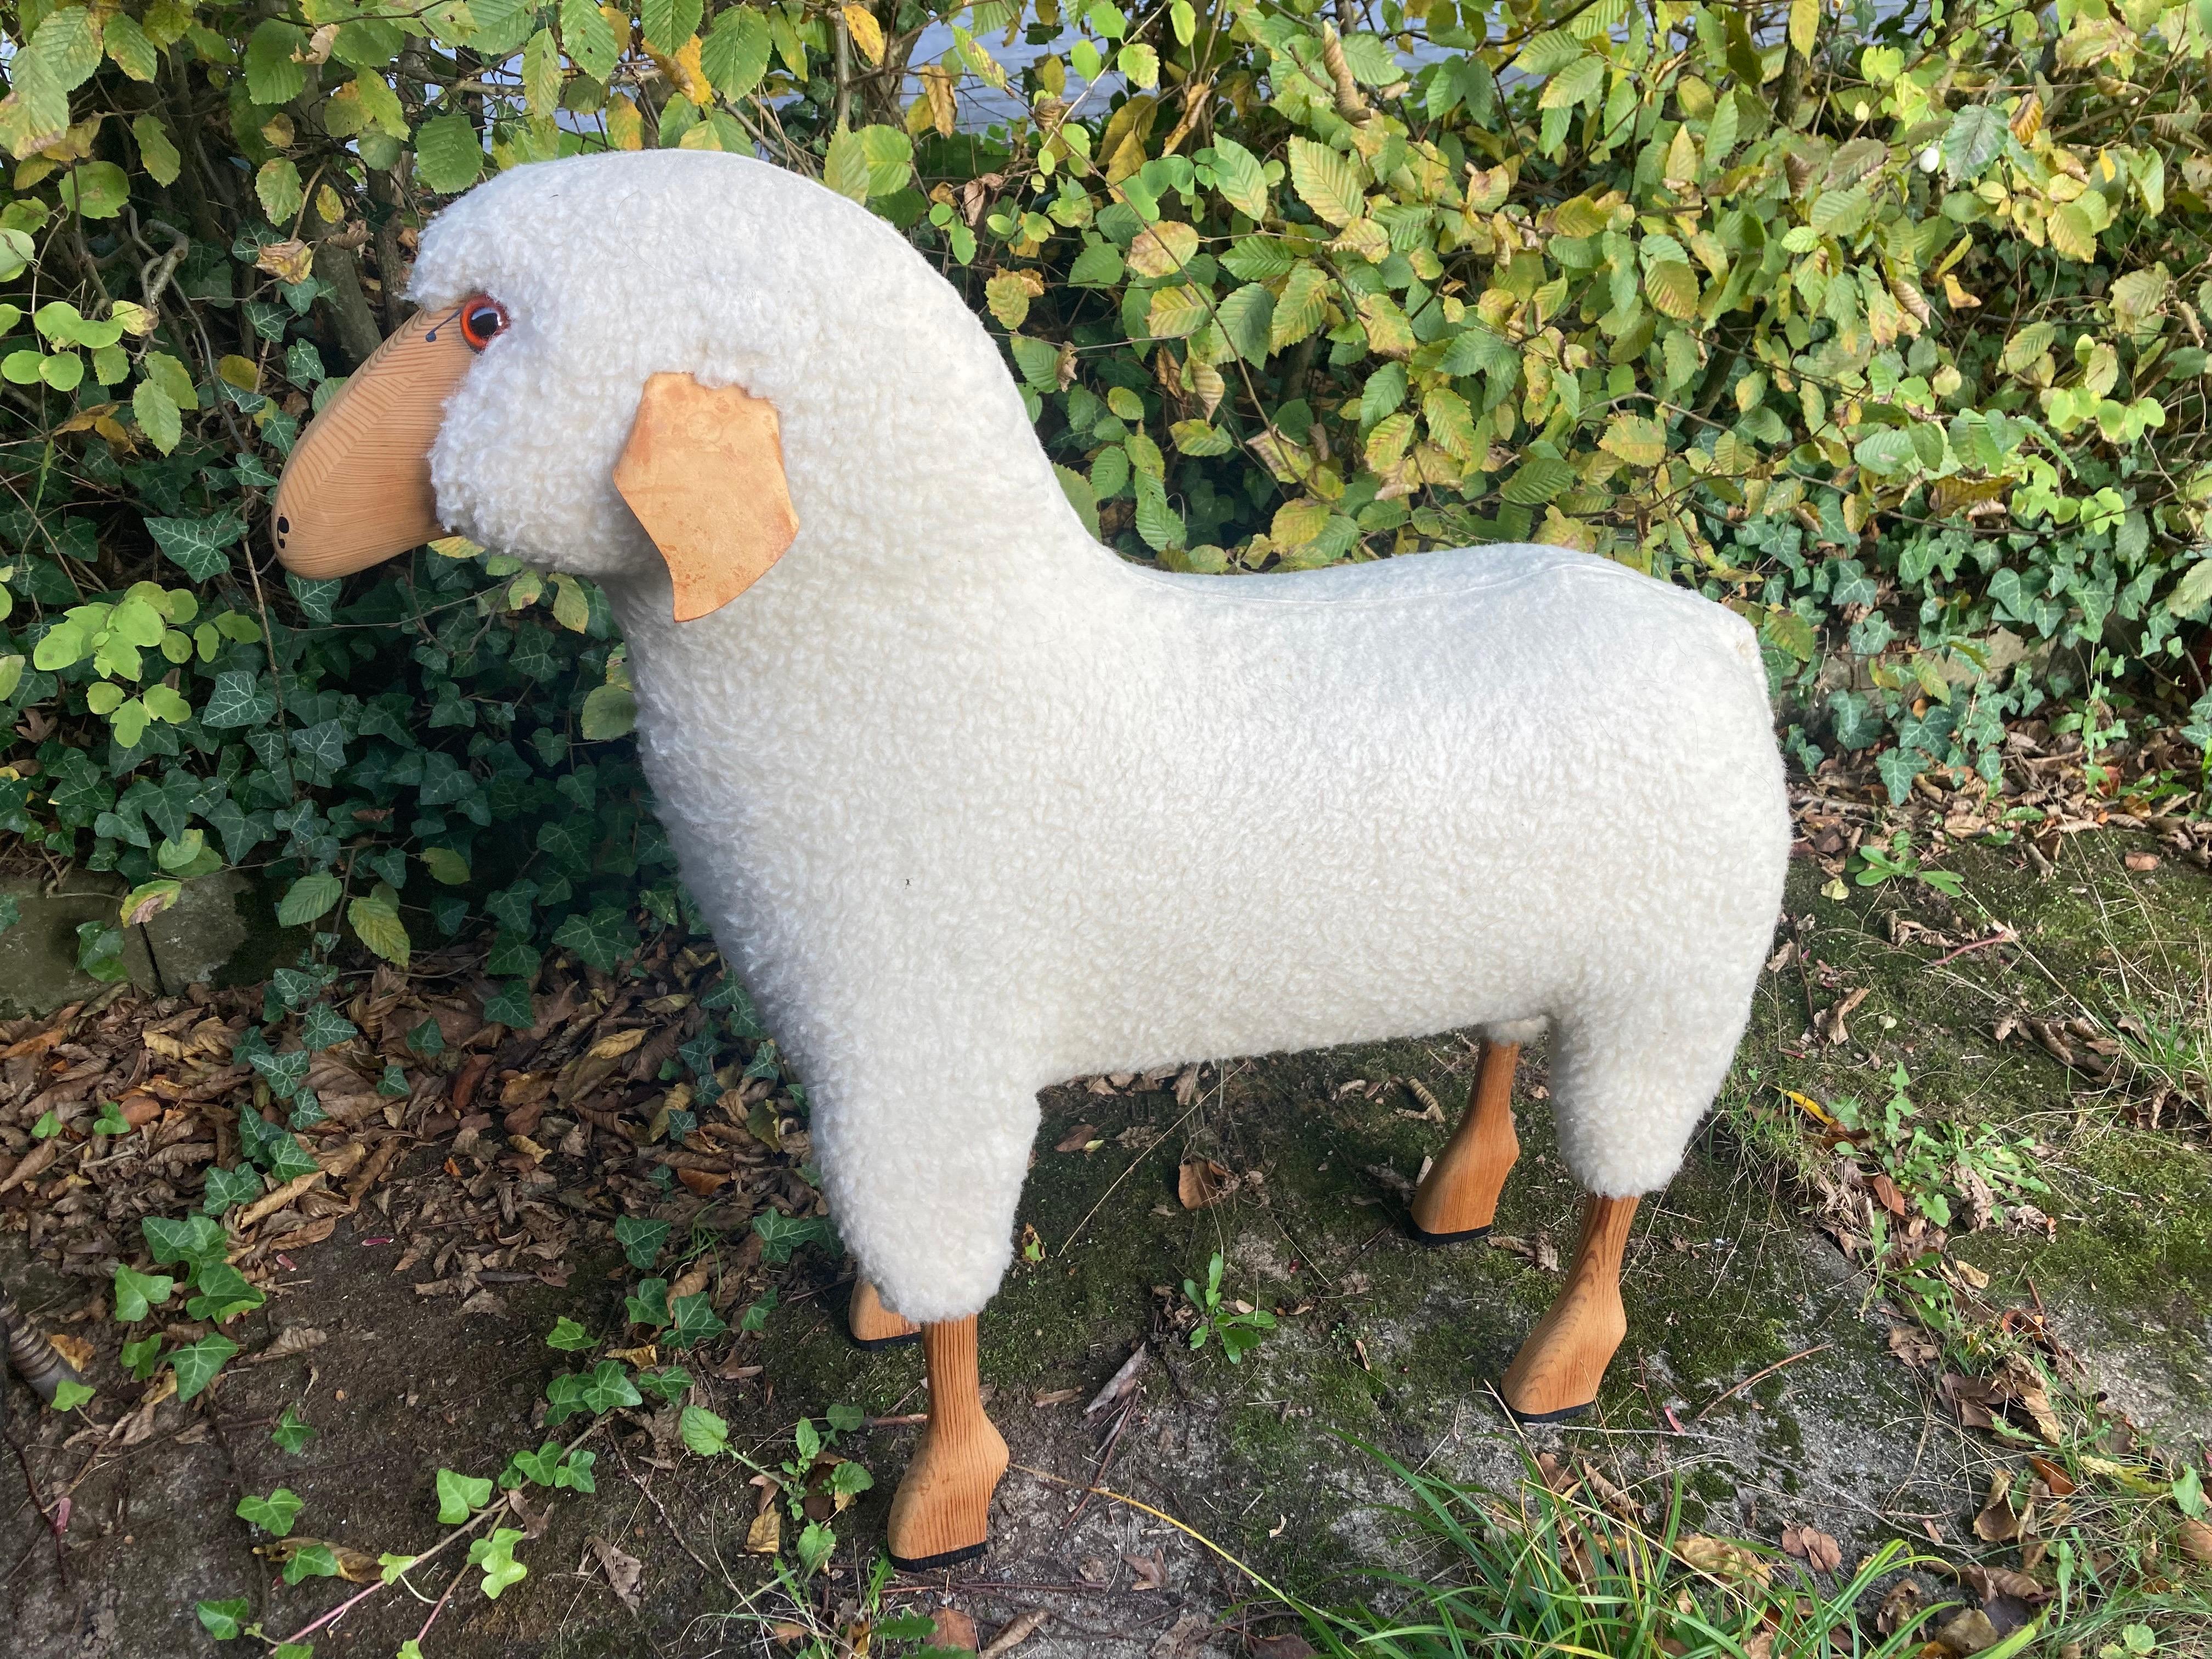 Ein großes lebensgroßes weißes Wollschaf von Hans-Peter Krafft. 1970s. Hergestellt in Deutschland. 
Das Schaf wurde aus originaler weißer Wolle, Leder und massivem, hochwertigem Buchenholz handgefertigt. Die gesamte Produktion fand um 1970 in